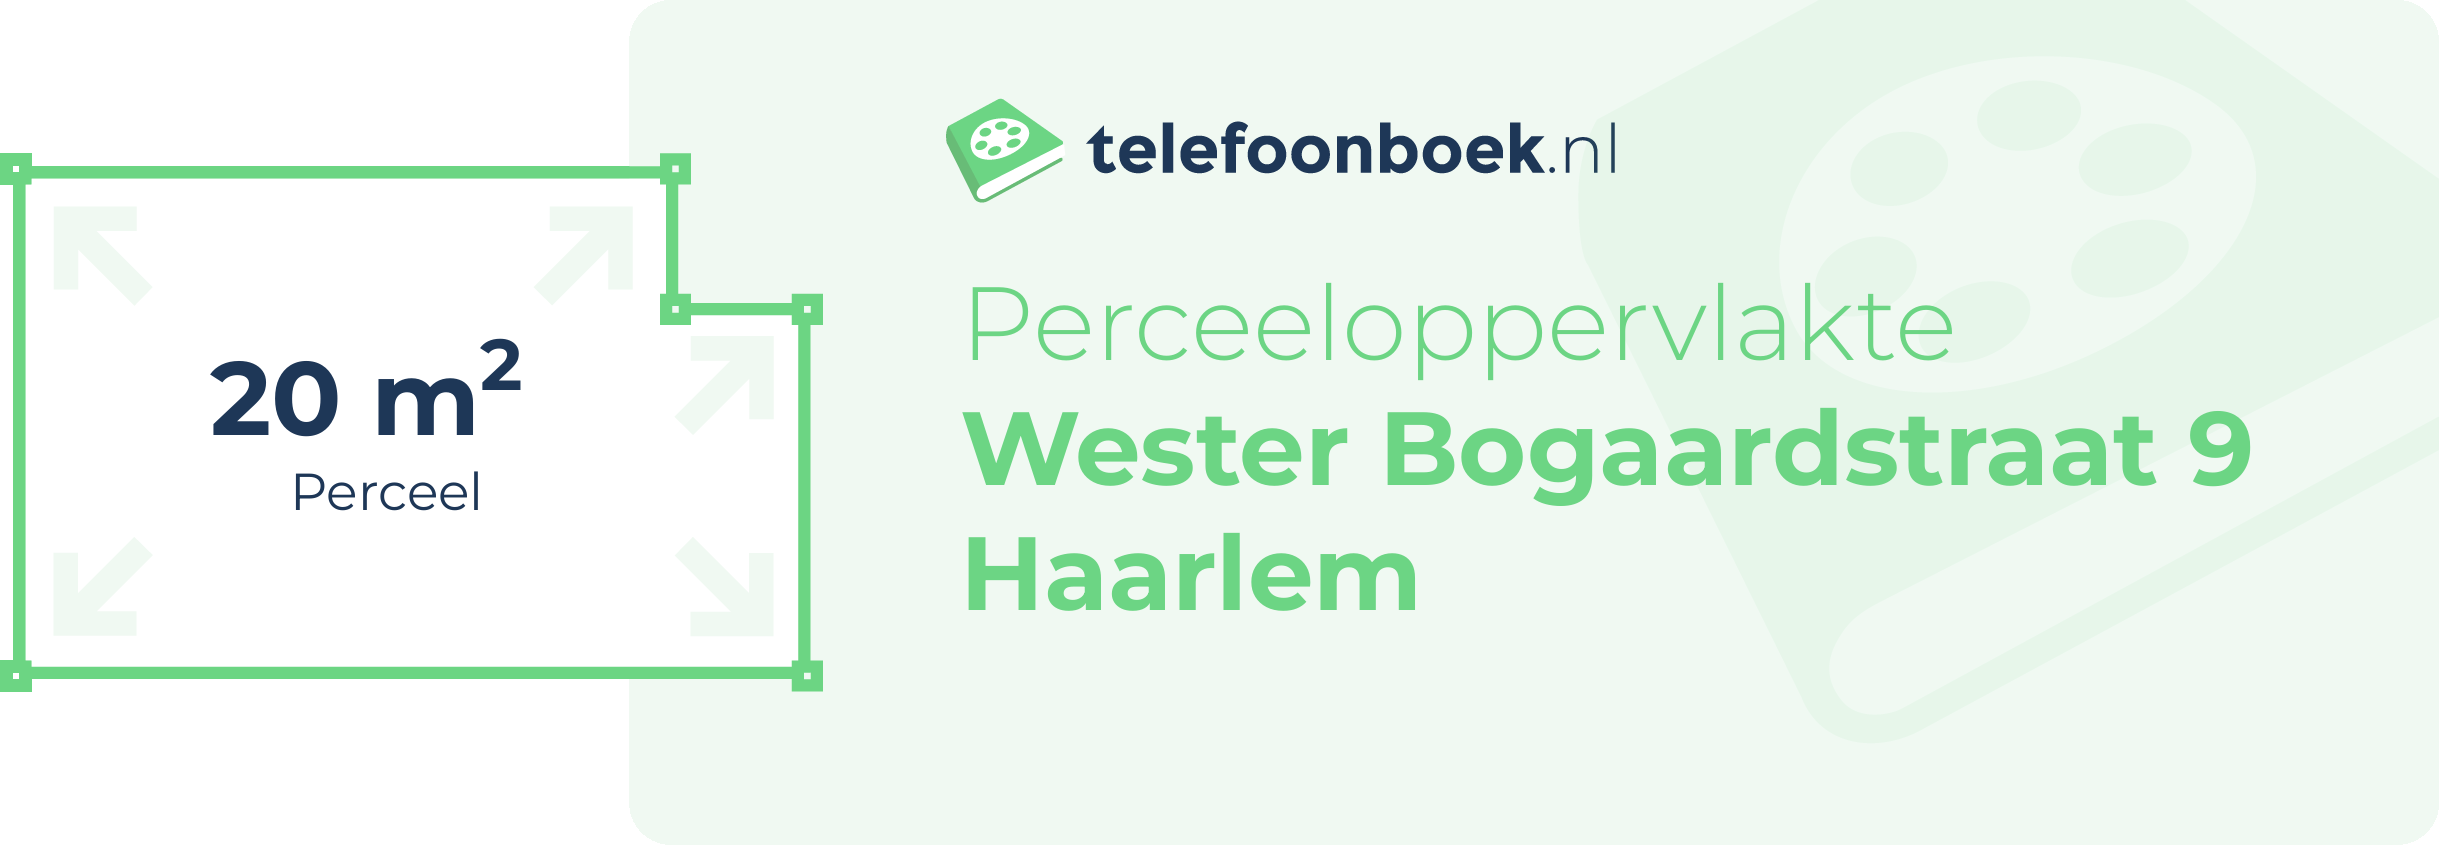 Perceeloppervlakte Wester Bogaardstraat 9 Haarlem